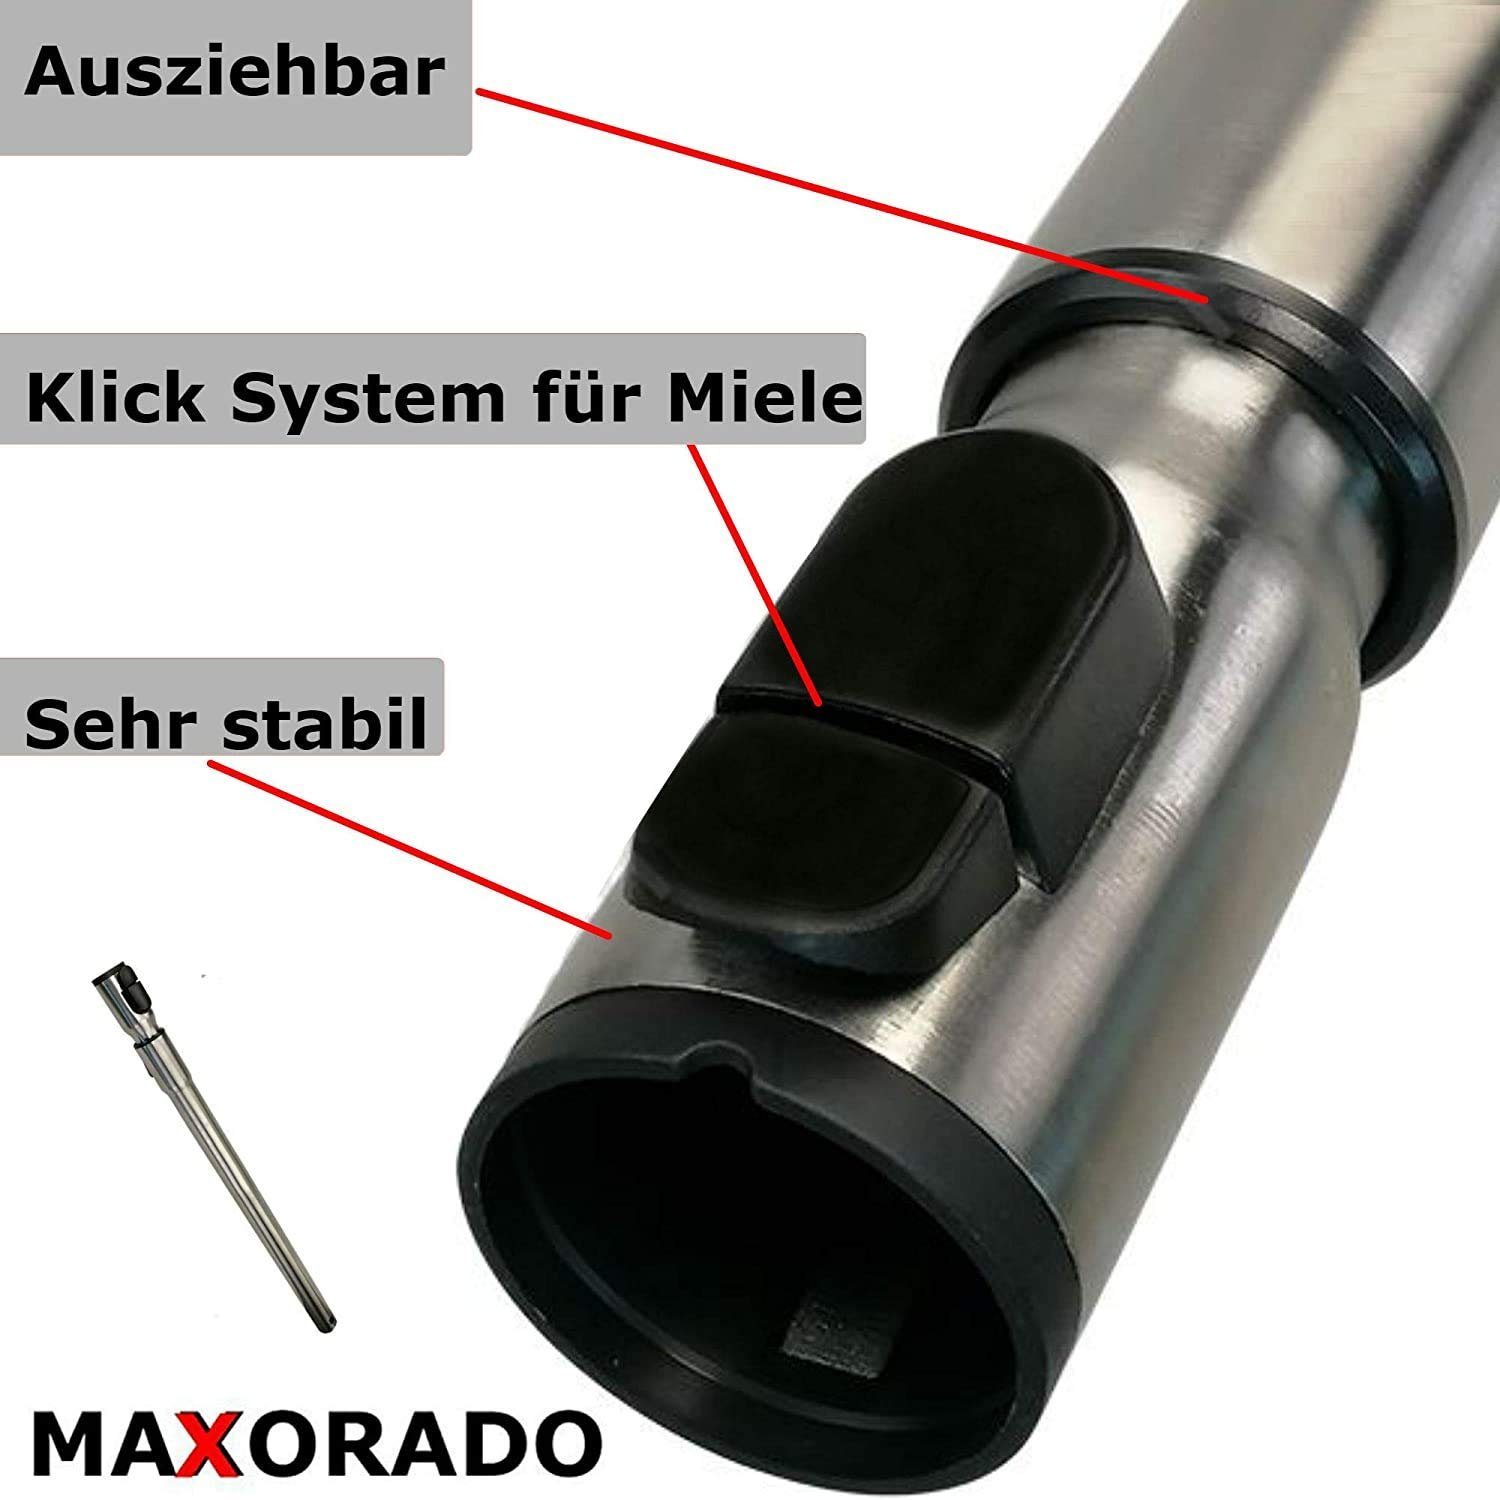 Serie C Düse Staubsauger-düse Rohr Ersatzteile Miele S2 C1 Maxorado für Set C3 Staubsaugerrohr